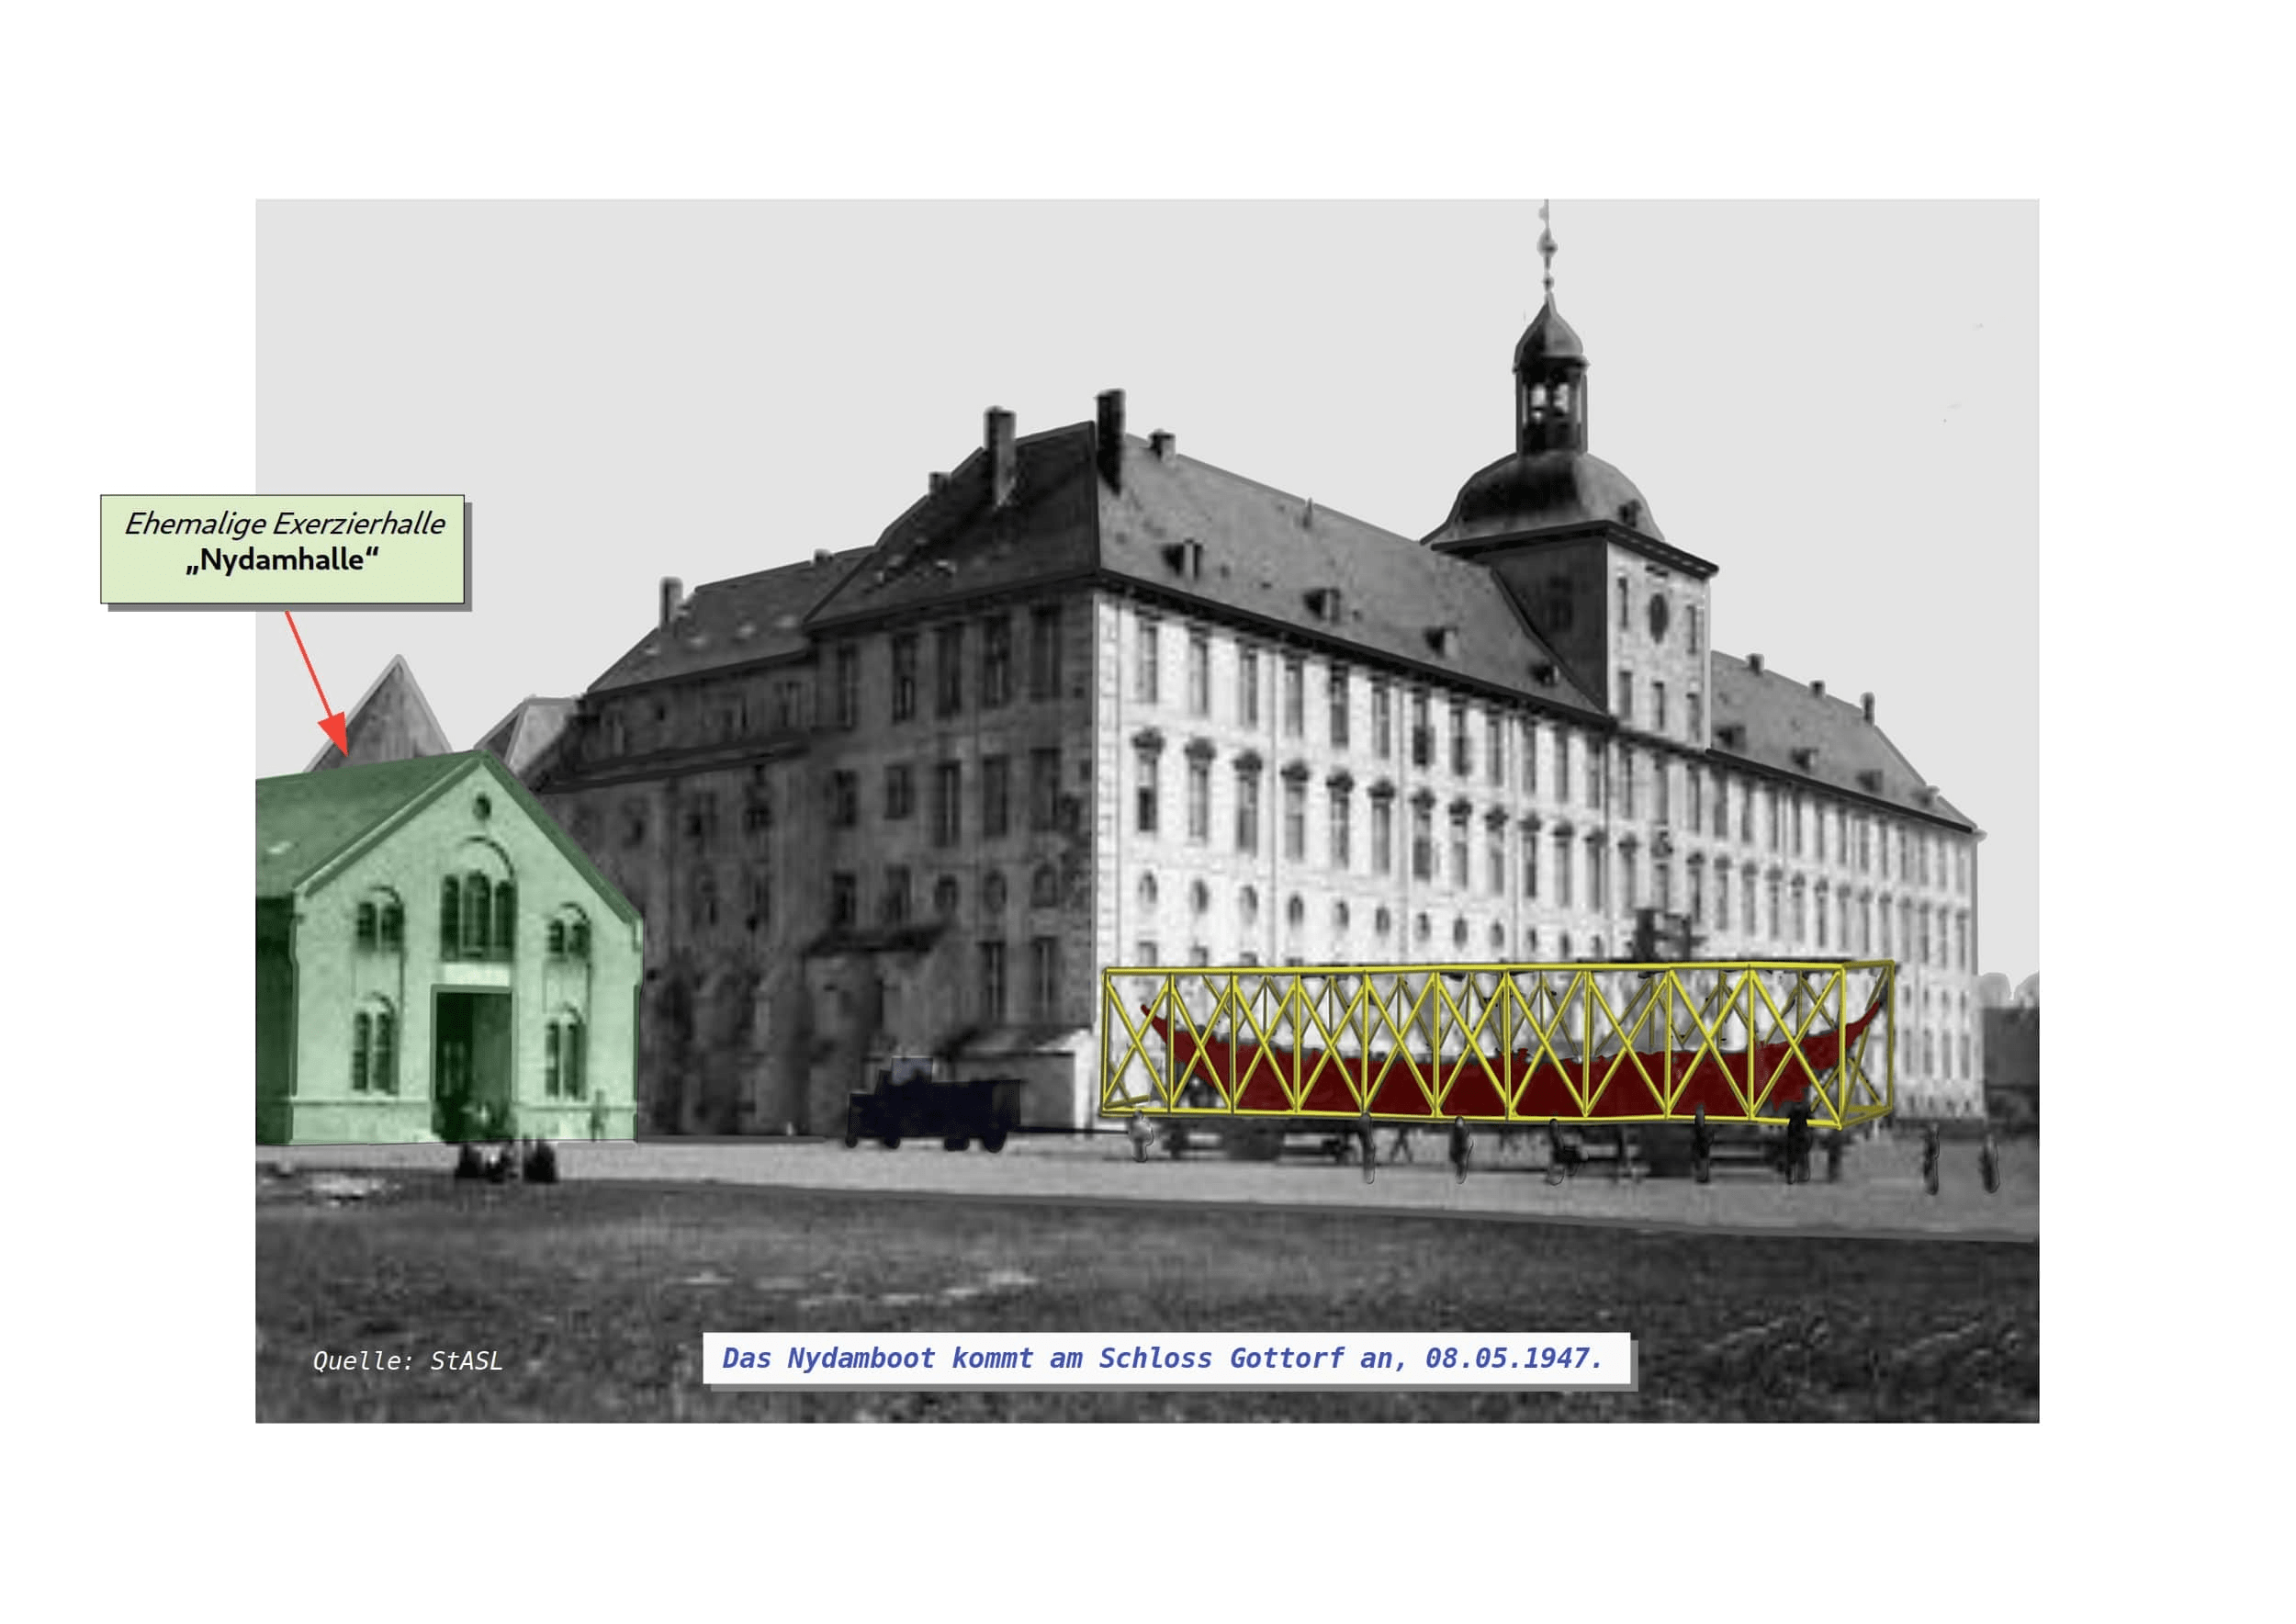 Nydamboot Ankunft Schloss Gottorf 1947